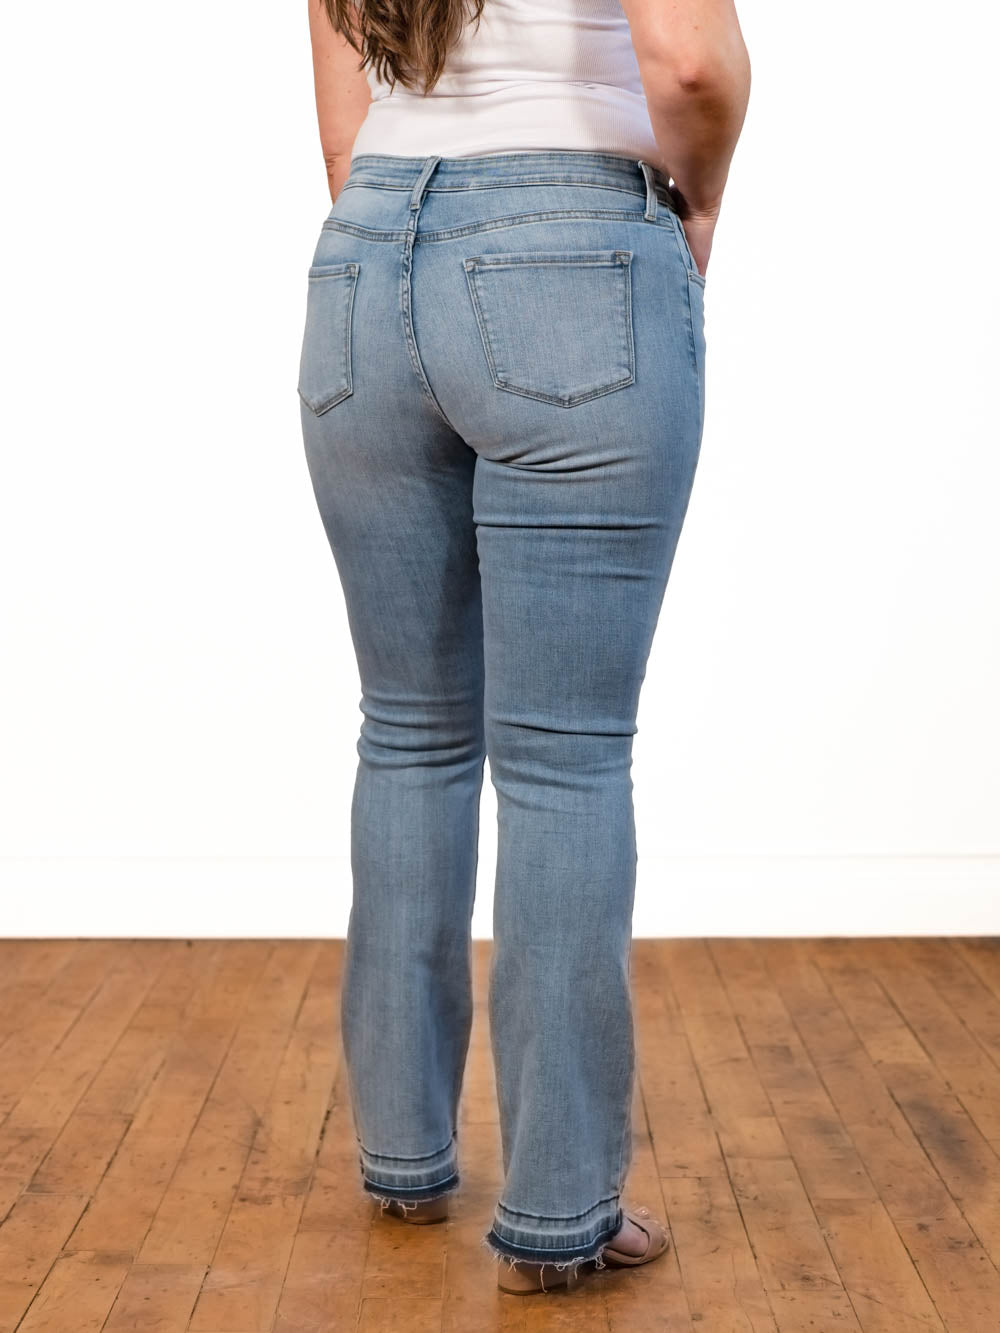 34" 36" 38" Long Inseam Jeans for Women